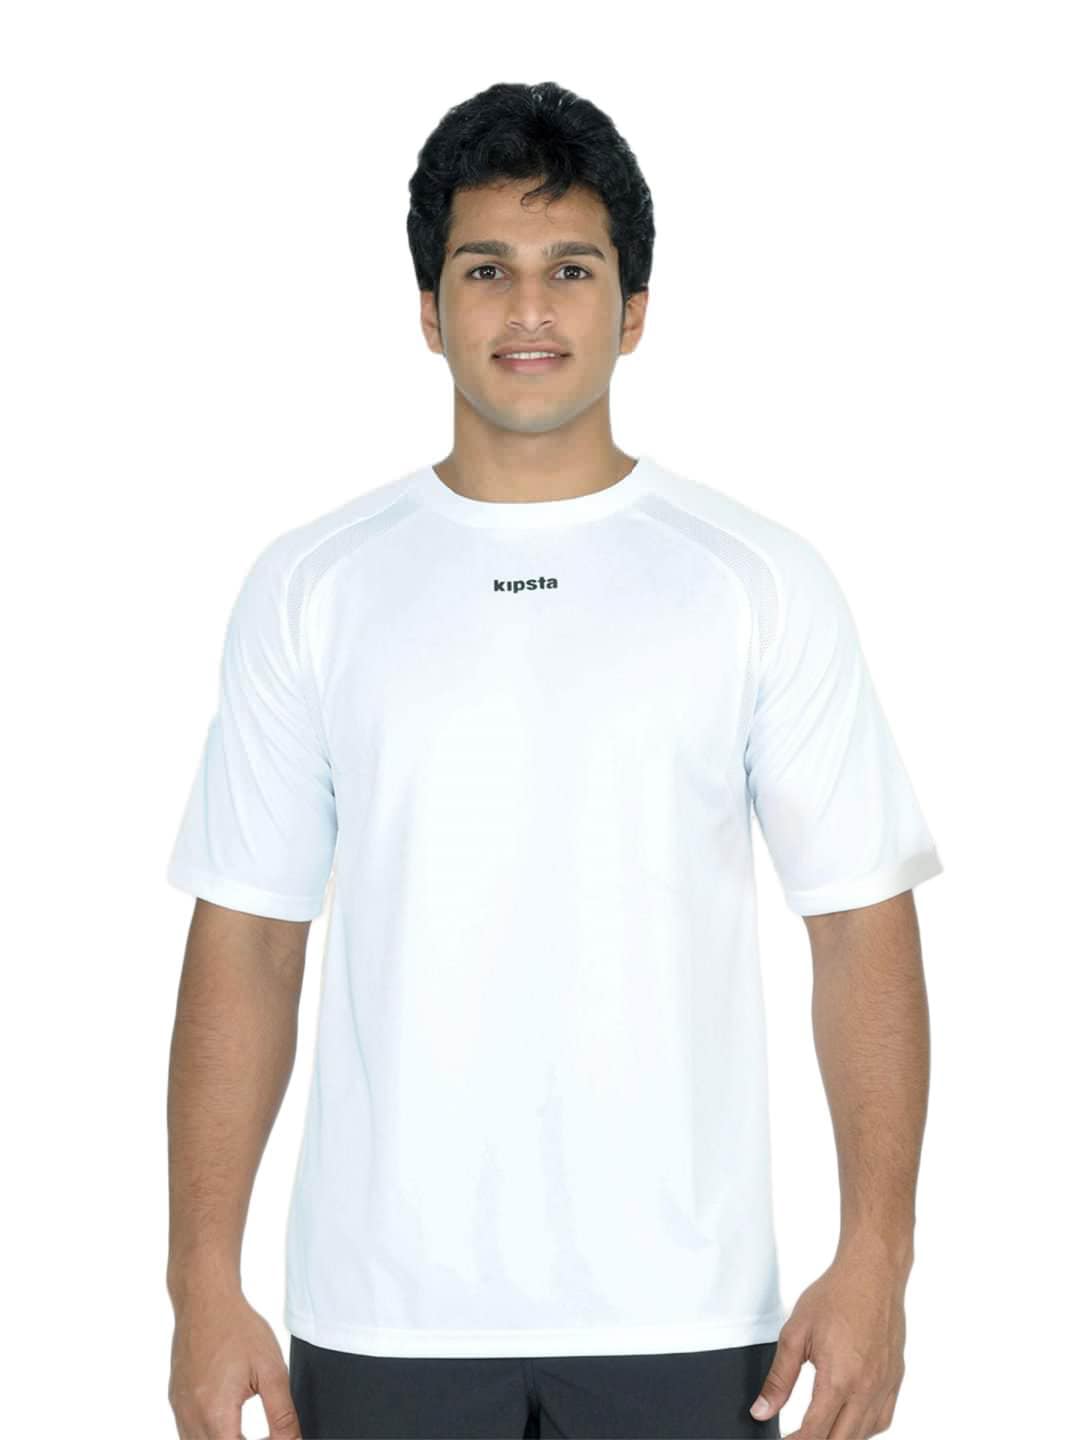 Kipsta Men Sports White T-shirt